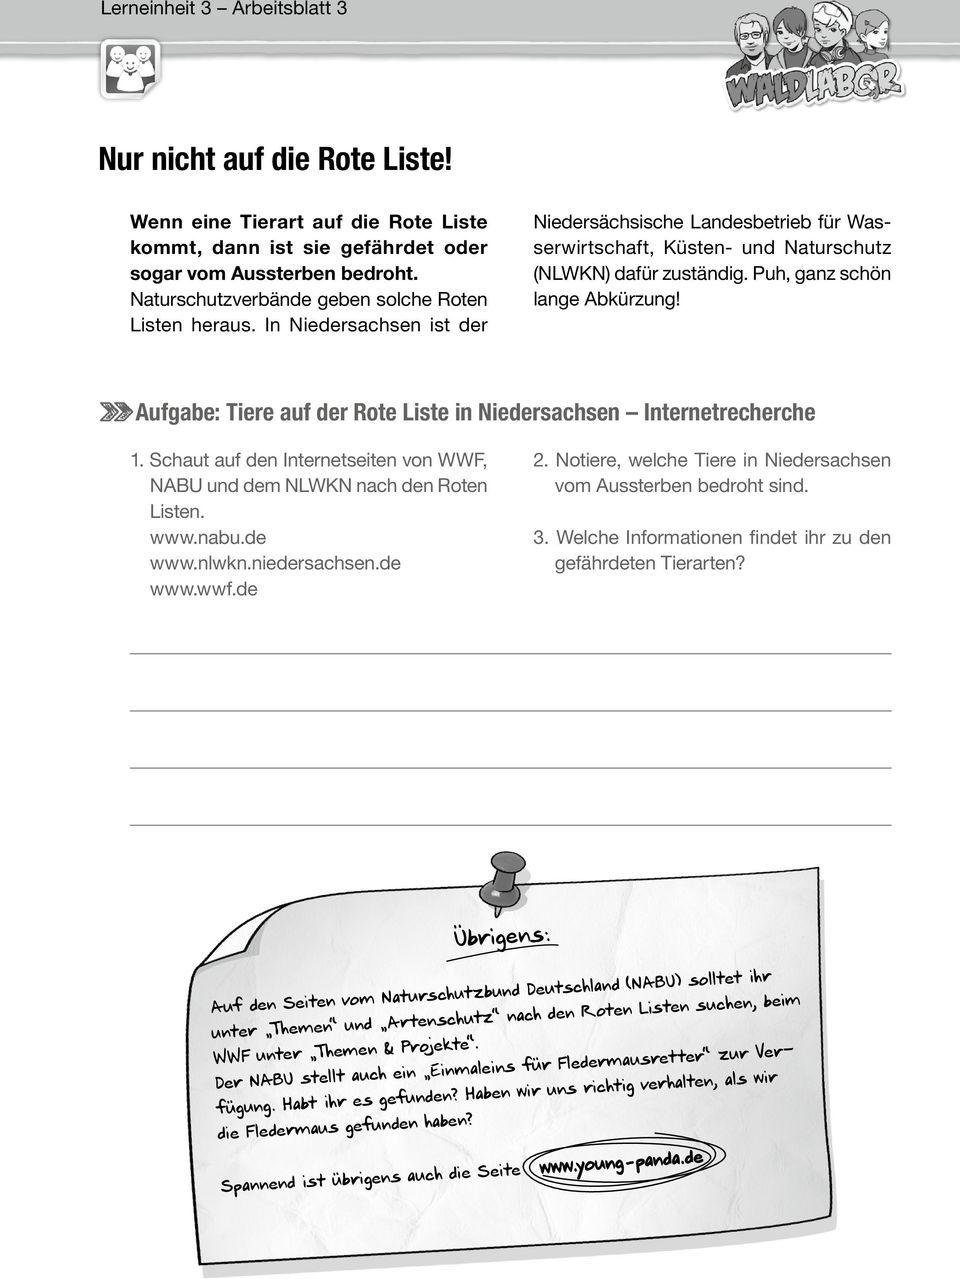 Puh, ganz schön lange Abkürzung! Aufgabe: Tiere auf der Rote Liste in Niedersachsen Internetrecherche 1. Schaut auf den Internetseiten von WWF, NABU und dem NLWKN nach den Roten Listen. www.nabu.